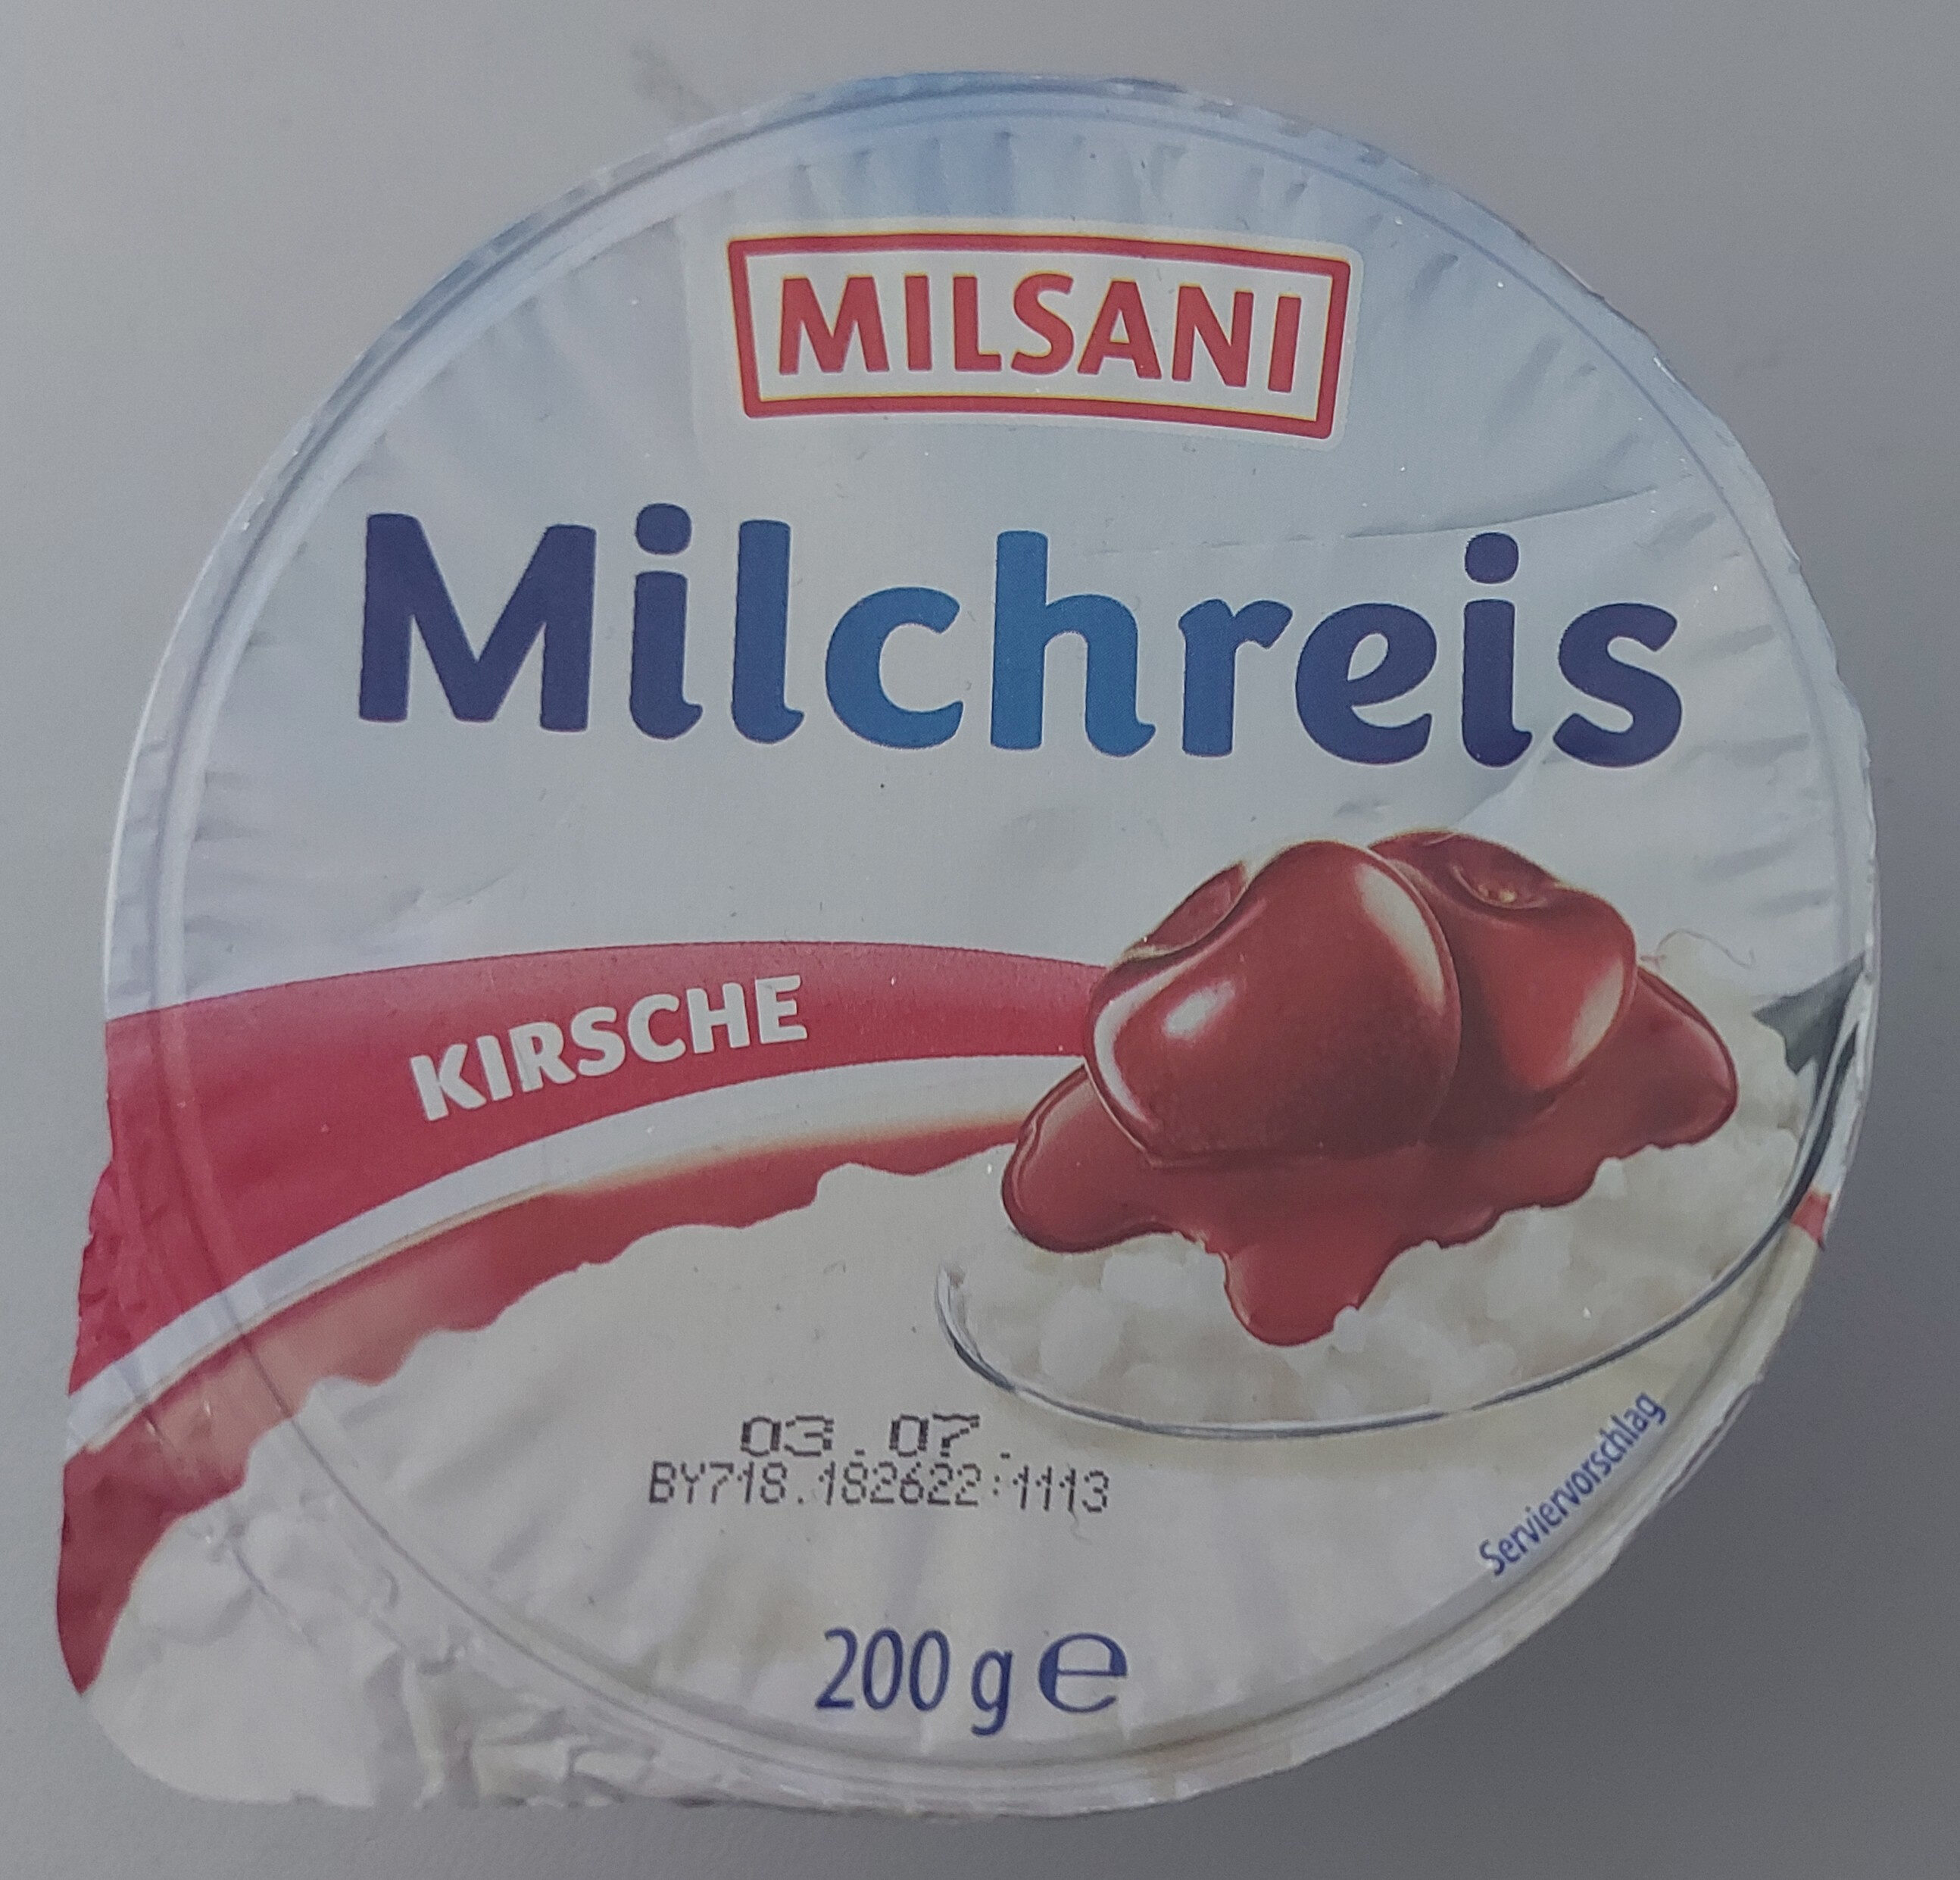 Milchreis Kirsche - Produkt